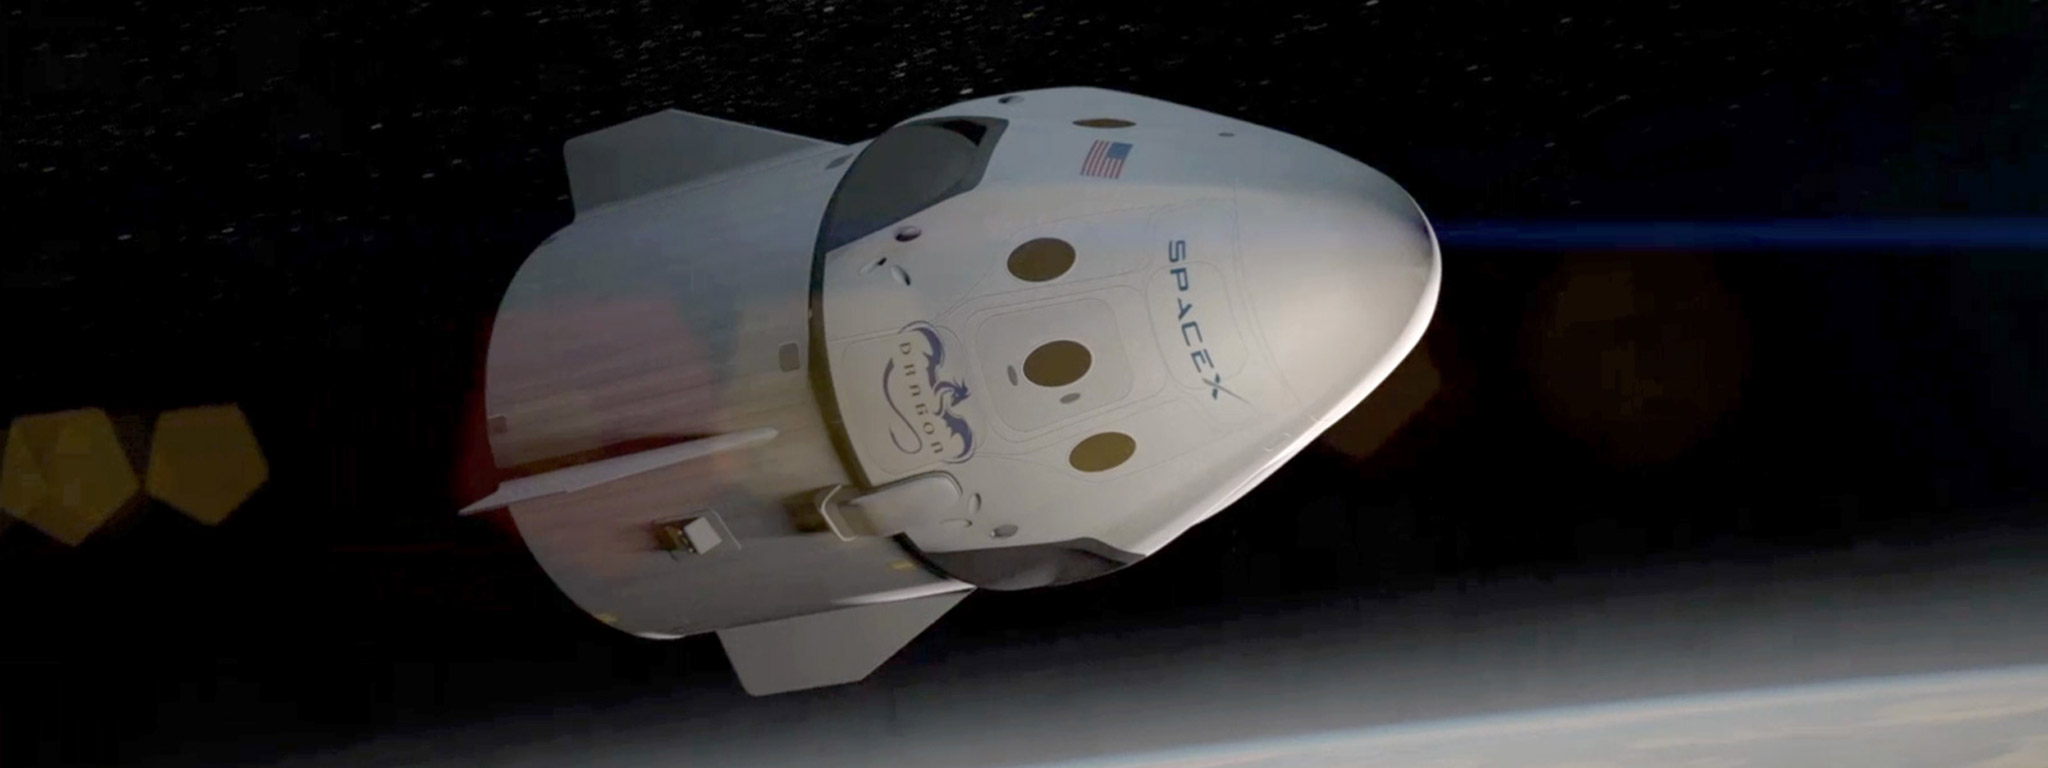 Chi tiết kế hoạch đưa người lên Mặt Trăng của Elon Musk